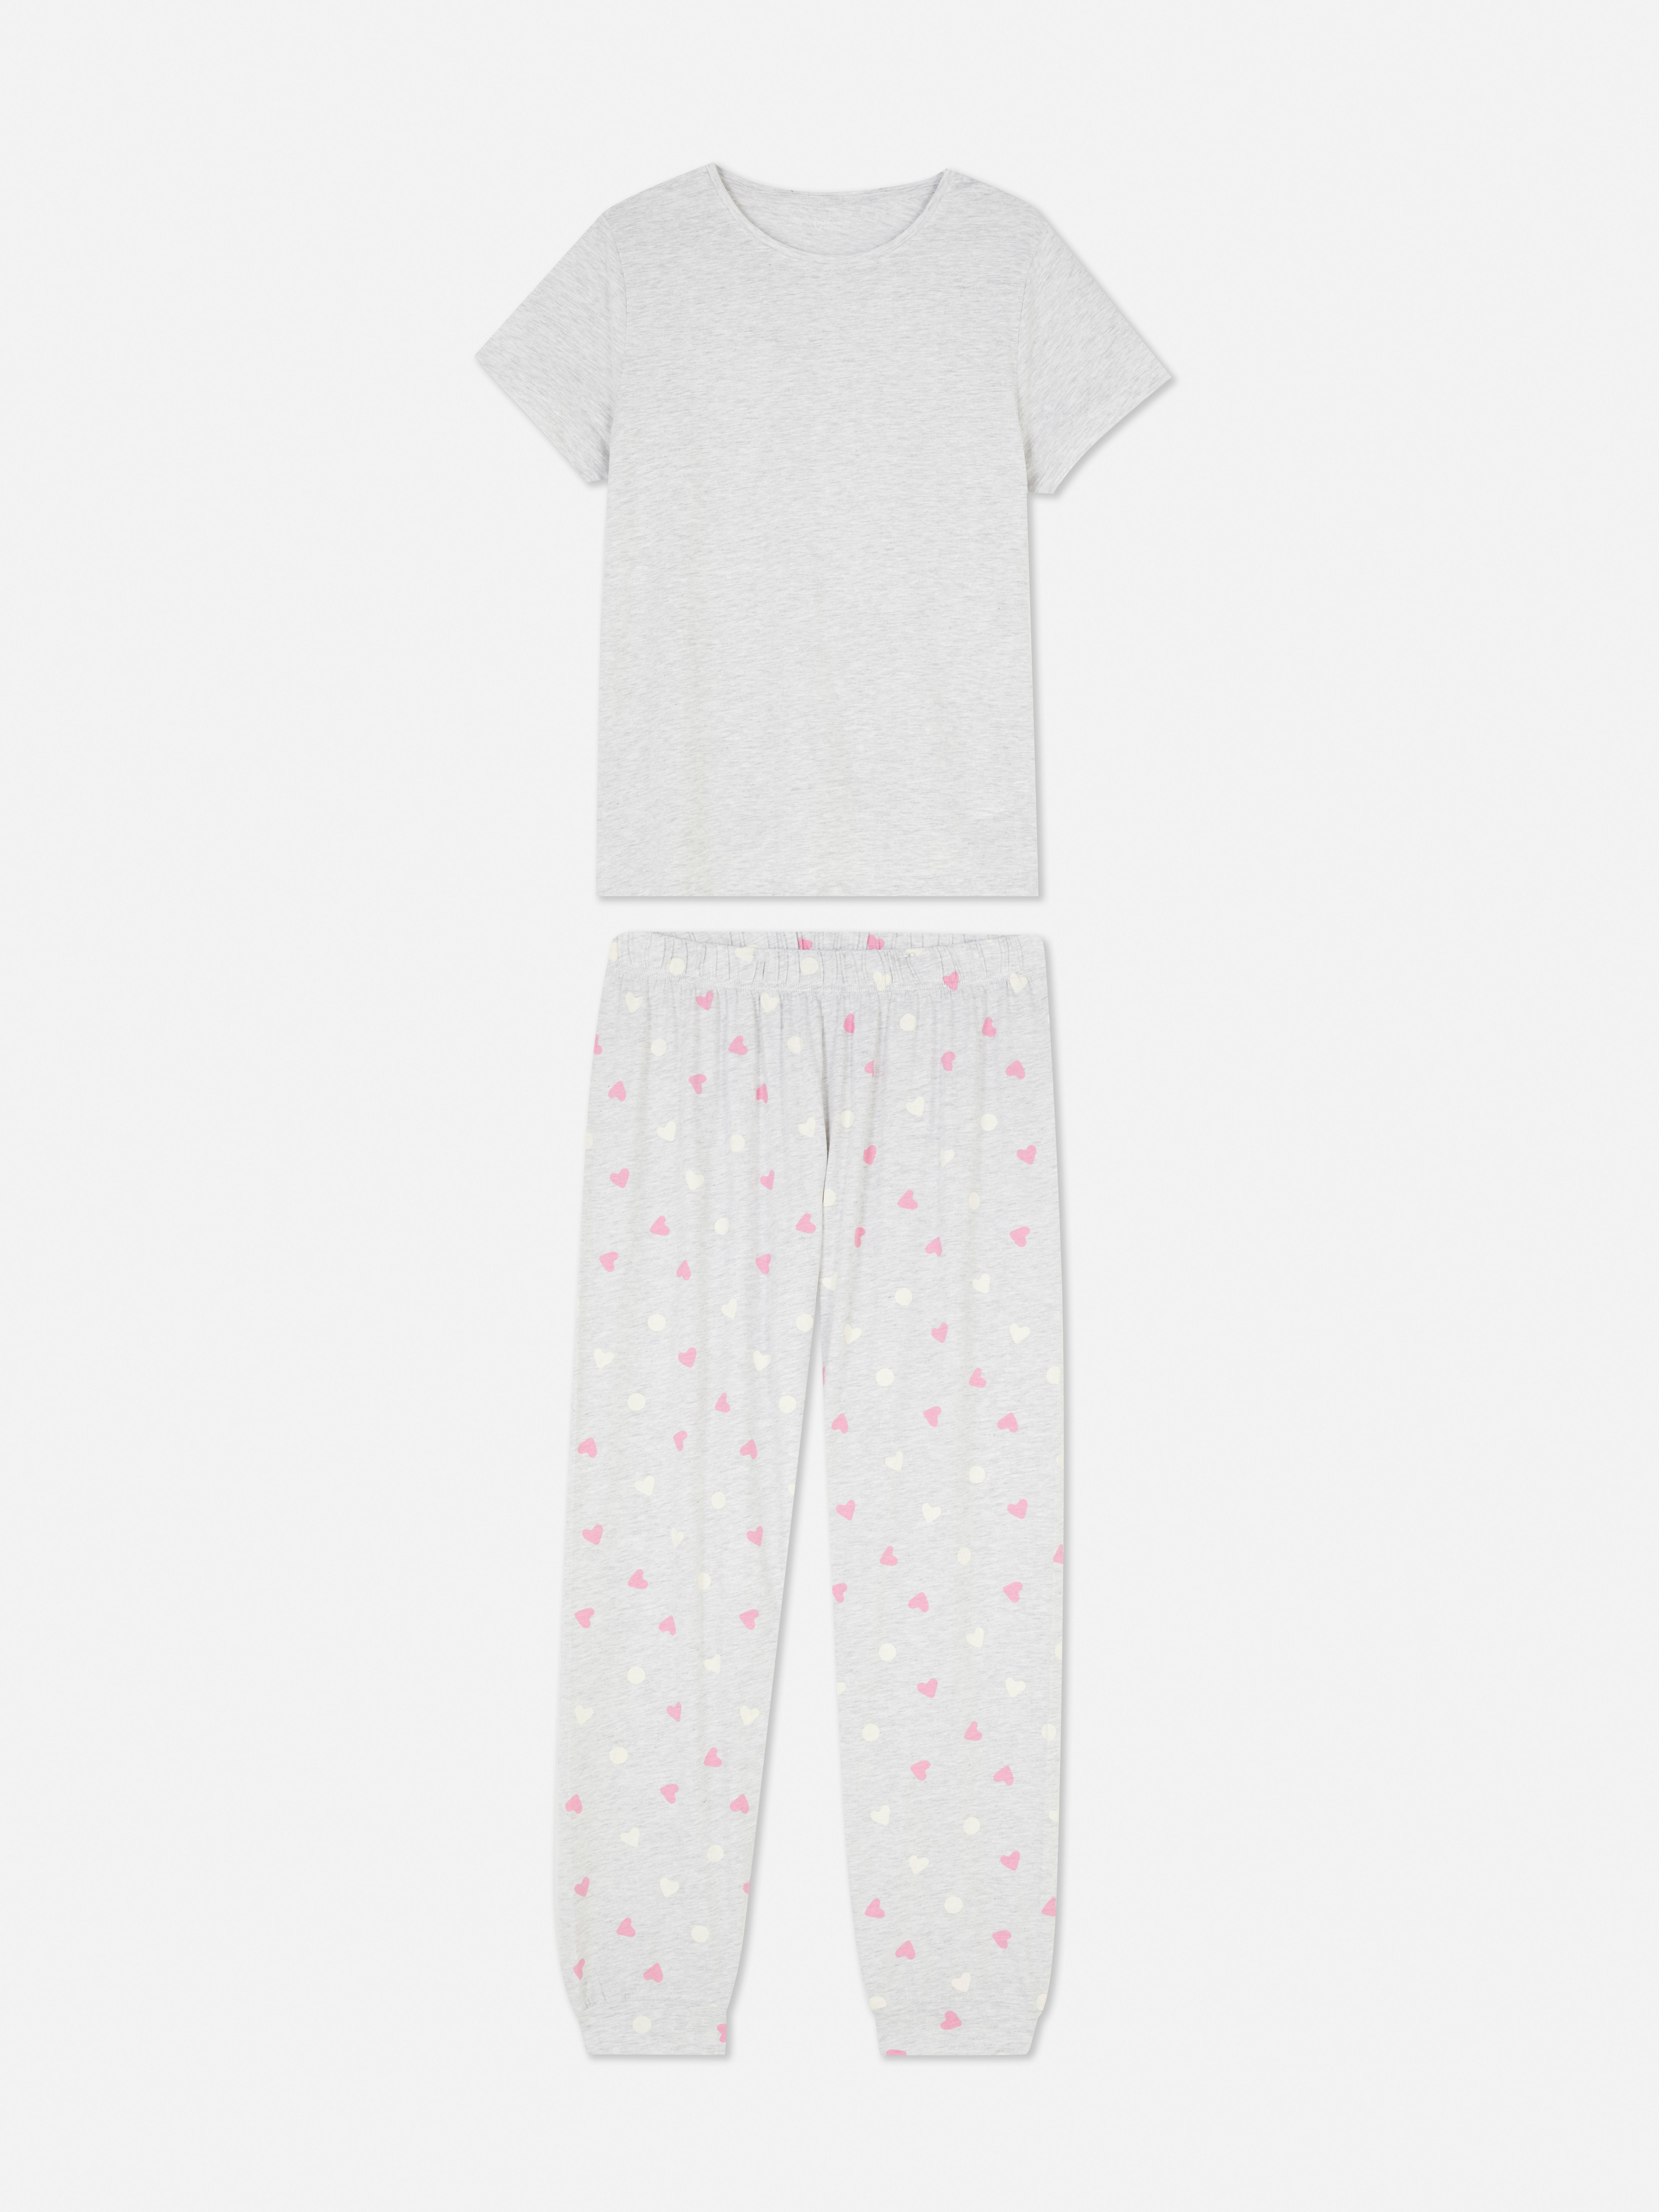 Pijama estampado padrão floral